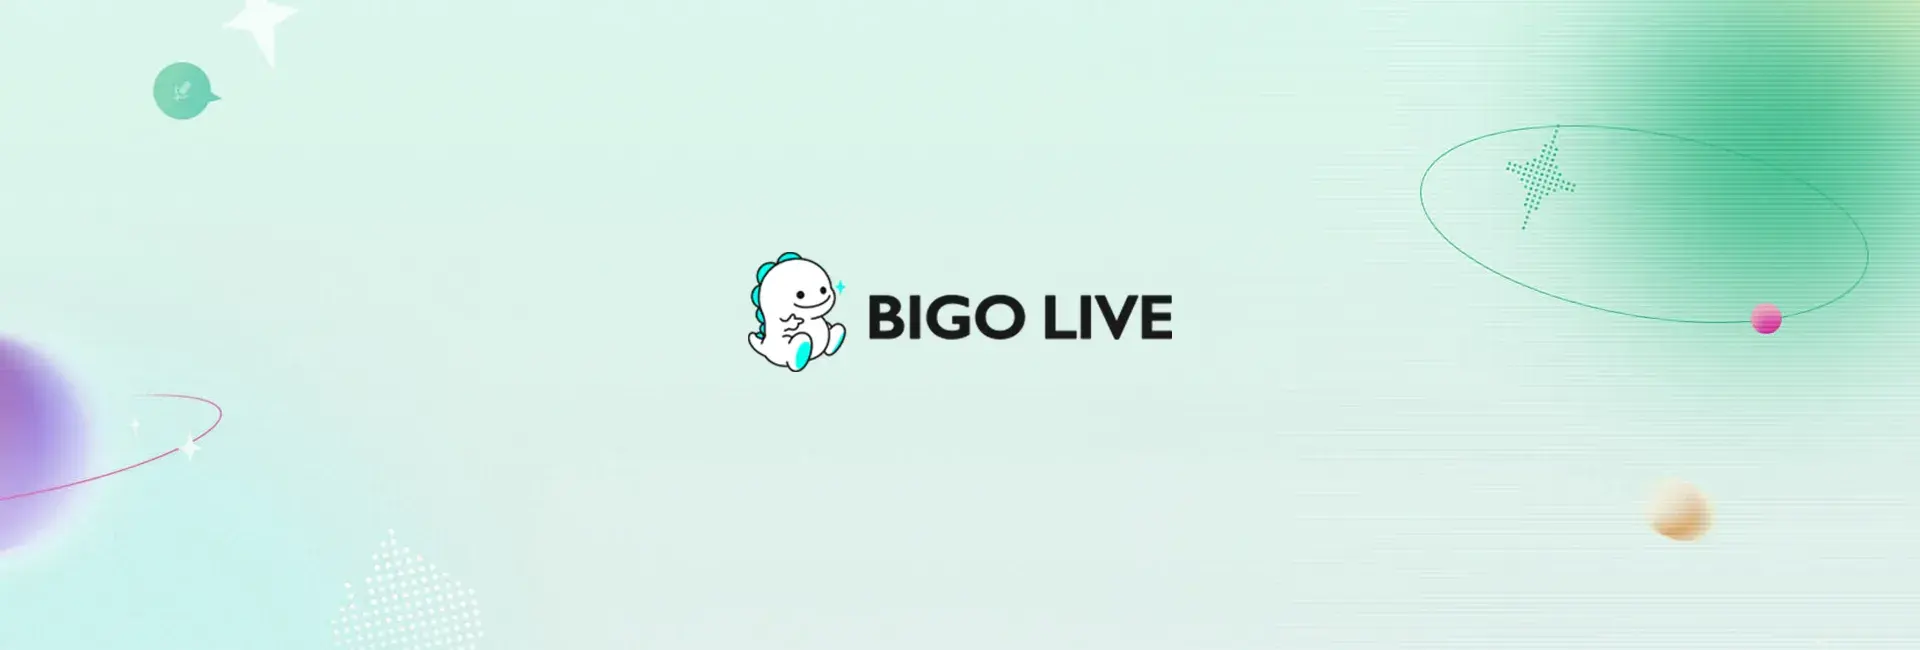 Bigo Live - 12600 Diamonds (Global)